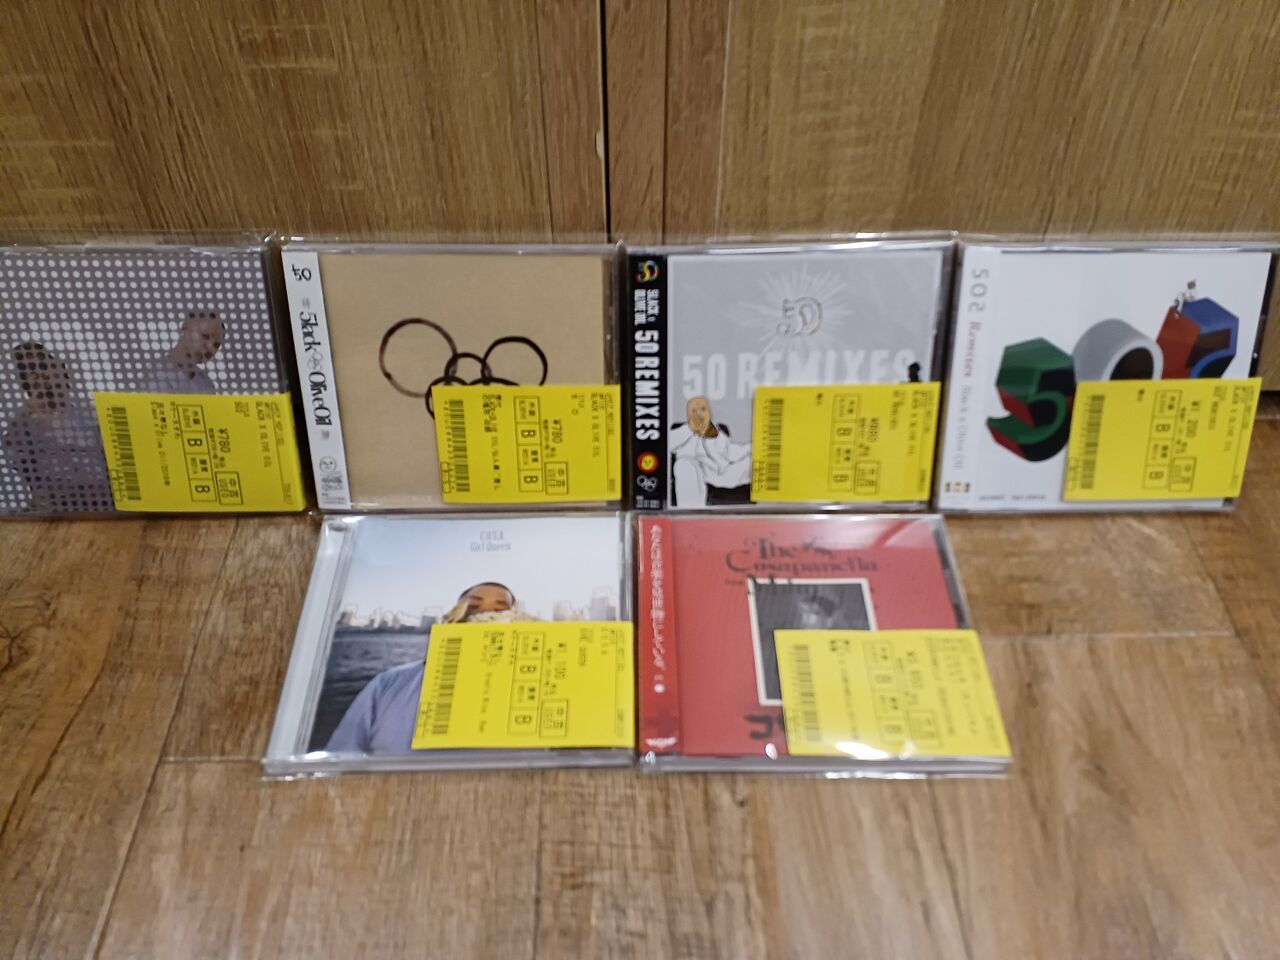 ◎12/5(月) 日本語ラップ/MIX 良質中古CD 50枚ほど入荷いたしました 